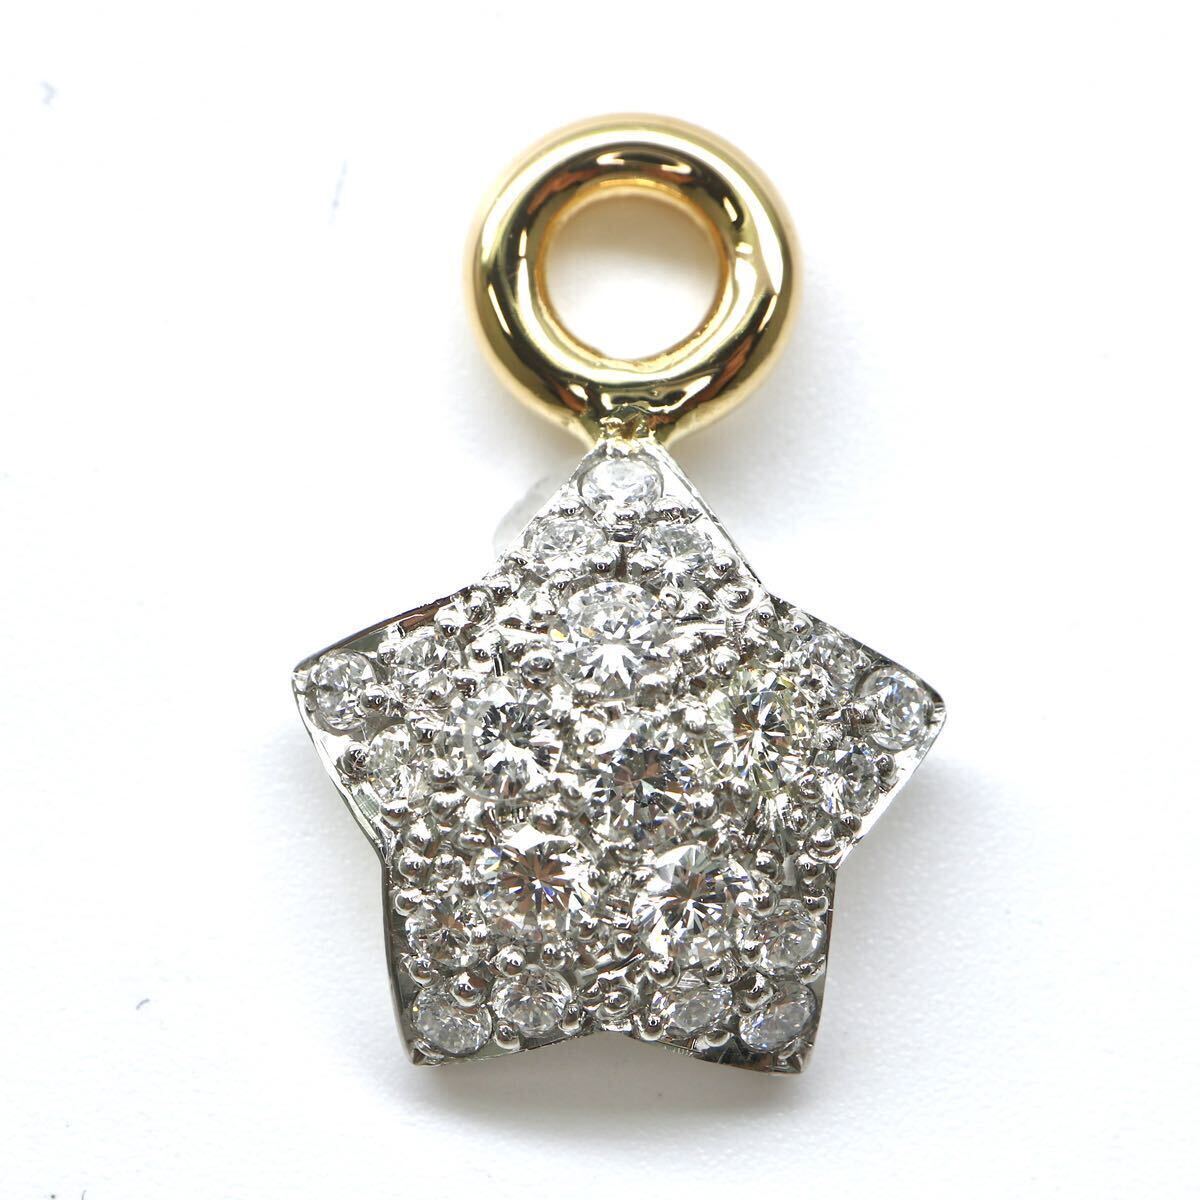 豪華!!◆Pt900 天然ダイヤモンドペンダントトップ◆M 約3.3g 0.73ct diamond pendantジュエリー EB9/EC7の画像1